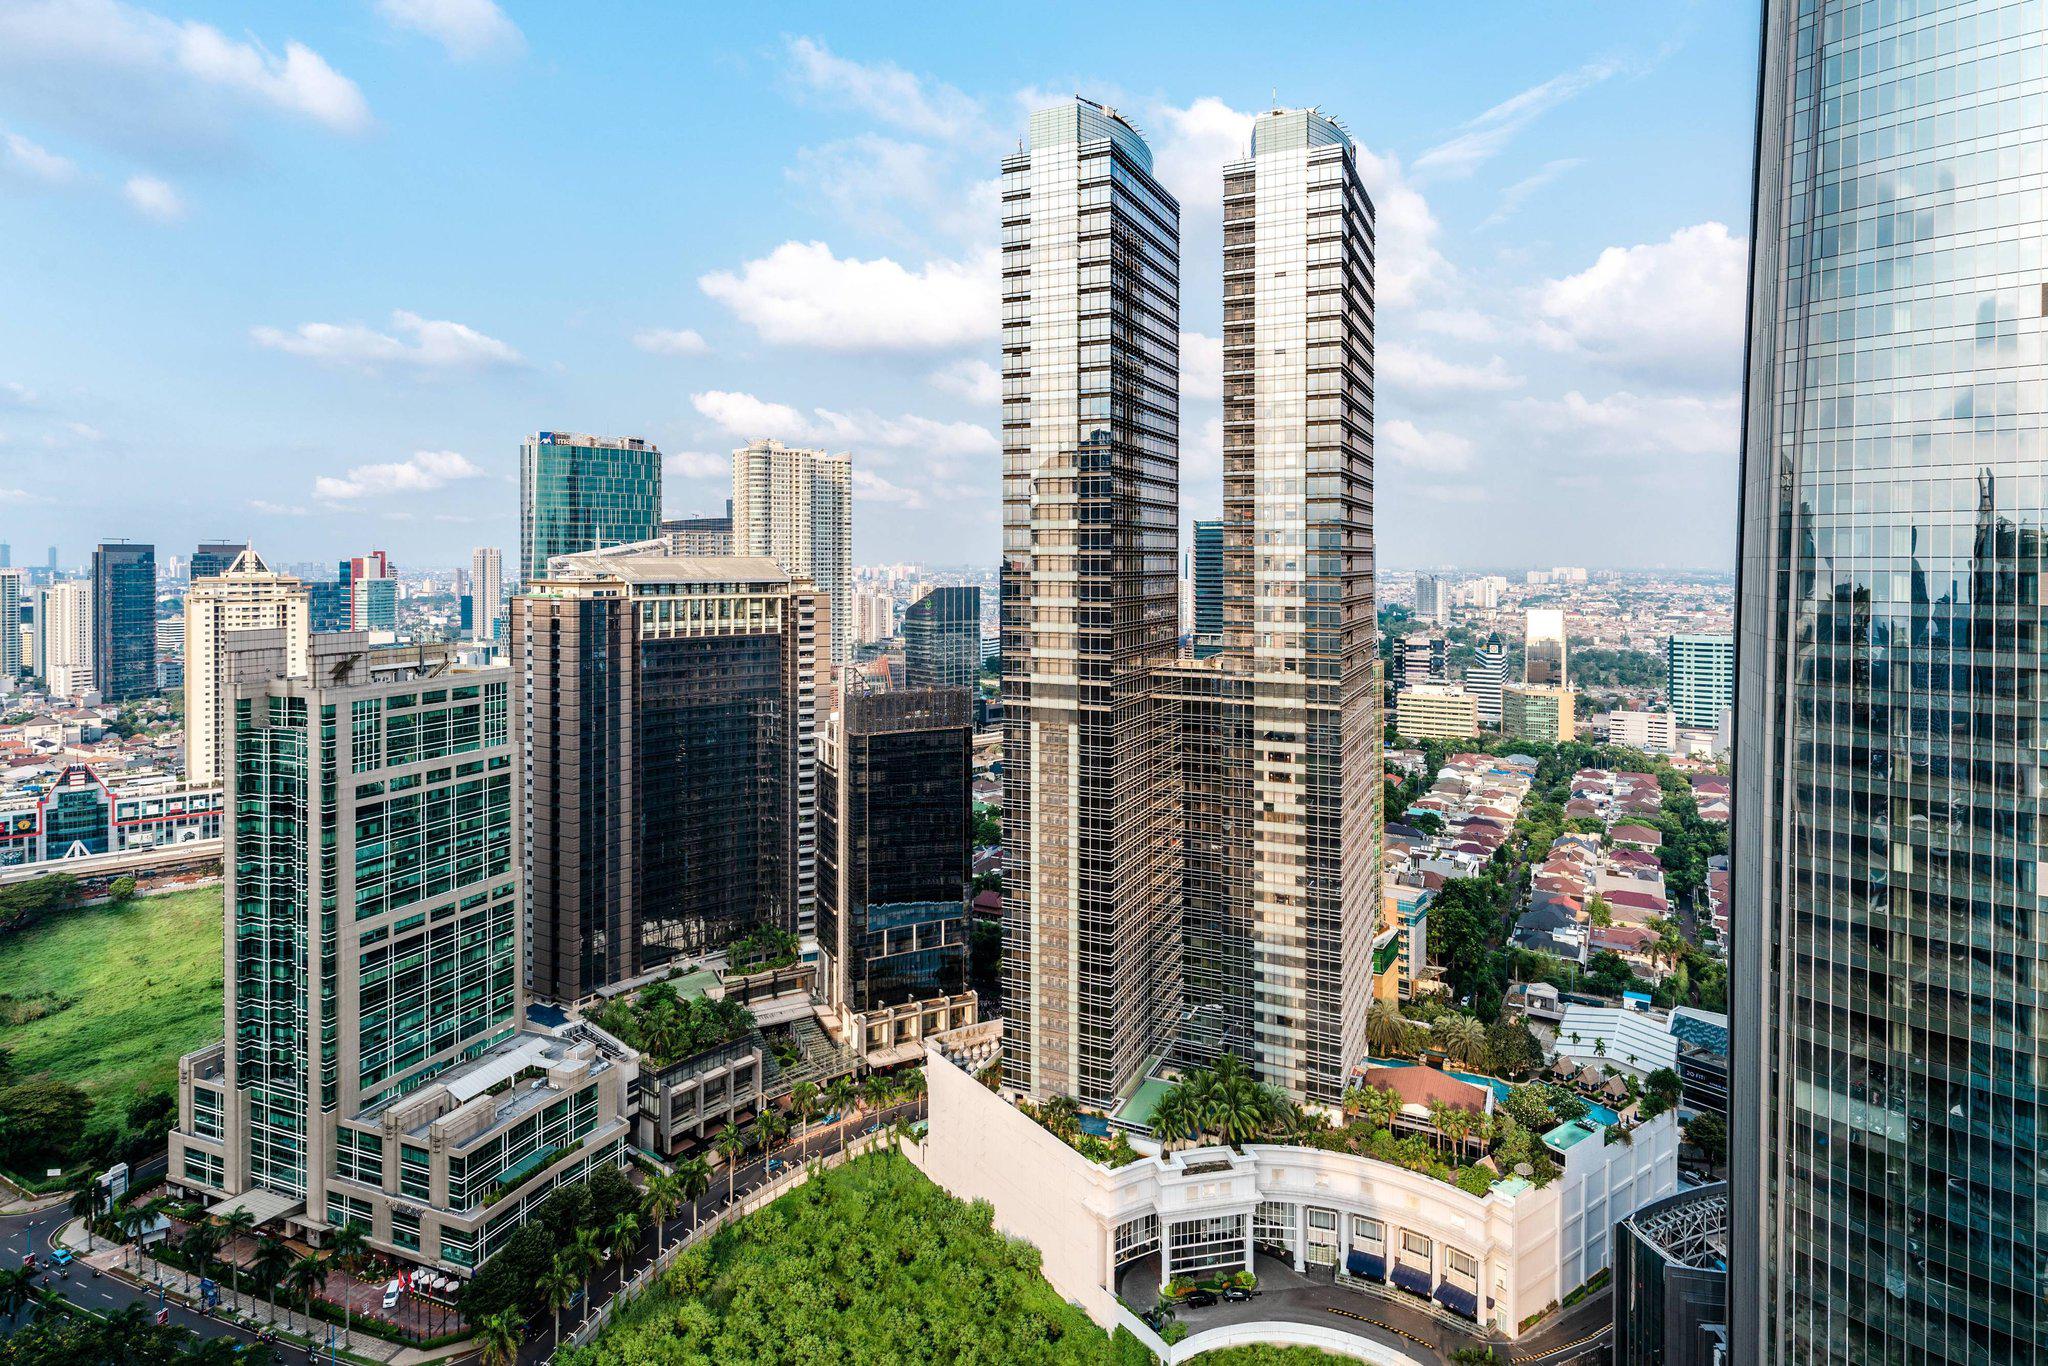 The Ritz-Carlton Jakarta, Mega Kuningan